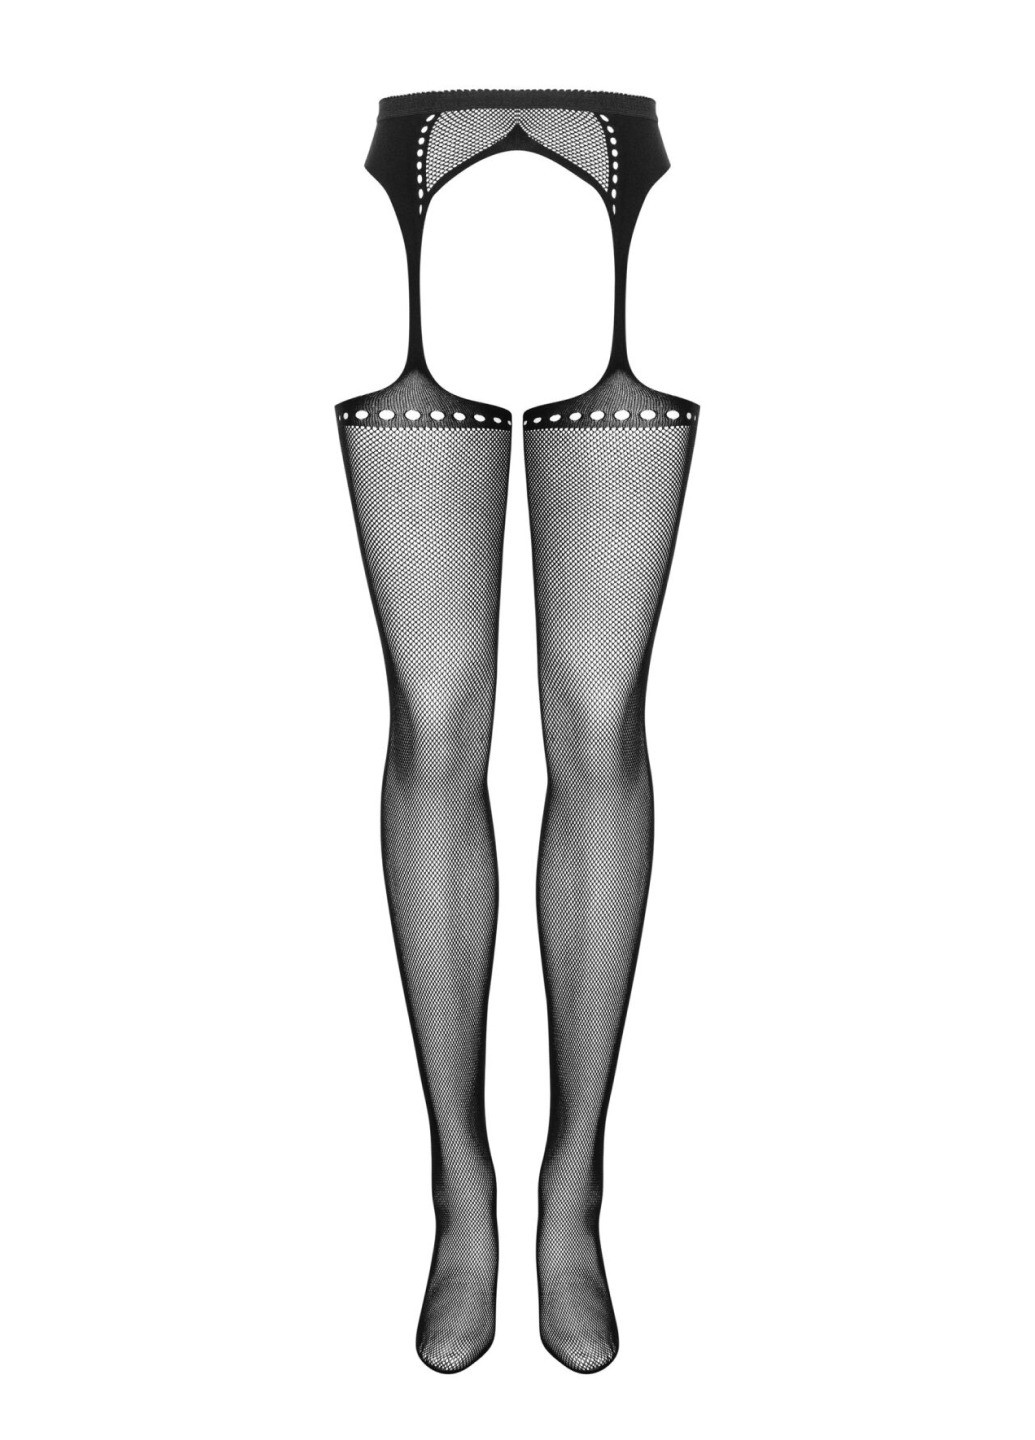 Сетчатые чулки-стокинги со стрелкой Garter stockings S314 S/M/L, черные, имитация гартеров Obsessive (275732961)